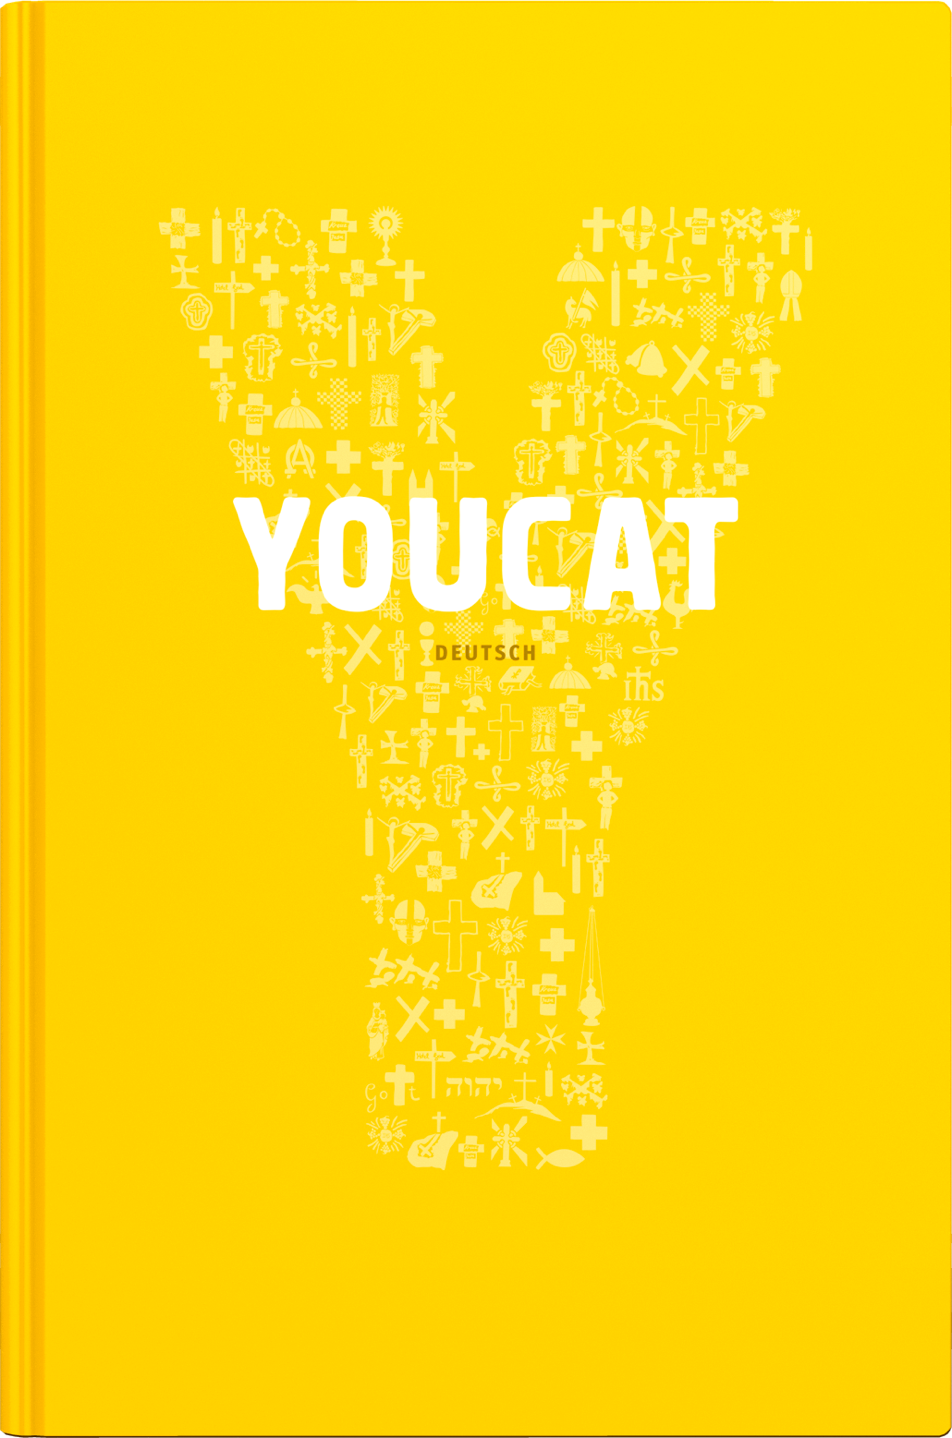 Der YOUCAT ist der Katechismus der Katholischen Kirche für junge Menschen und international in mehr als 40 Sprachen übersetzt und damit ein Welterfolg.